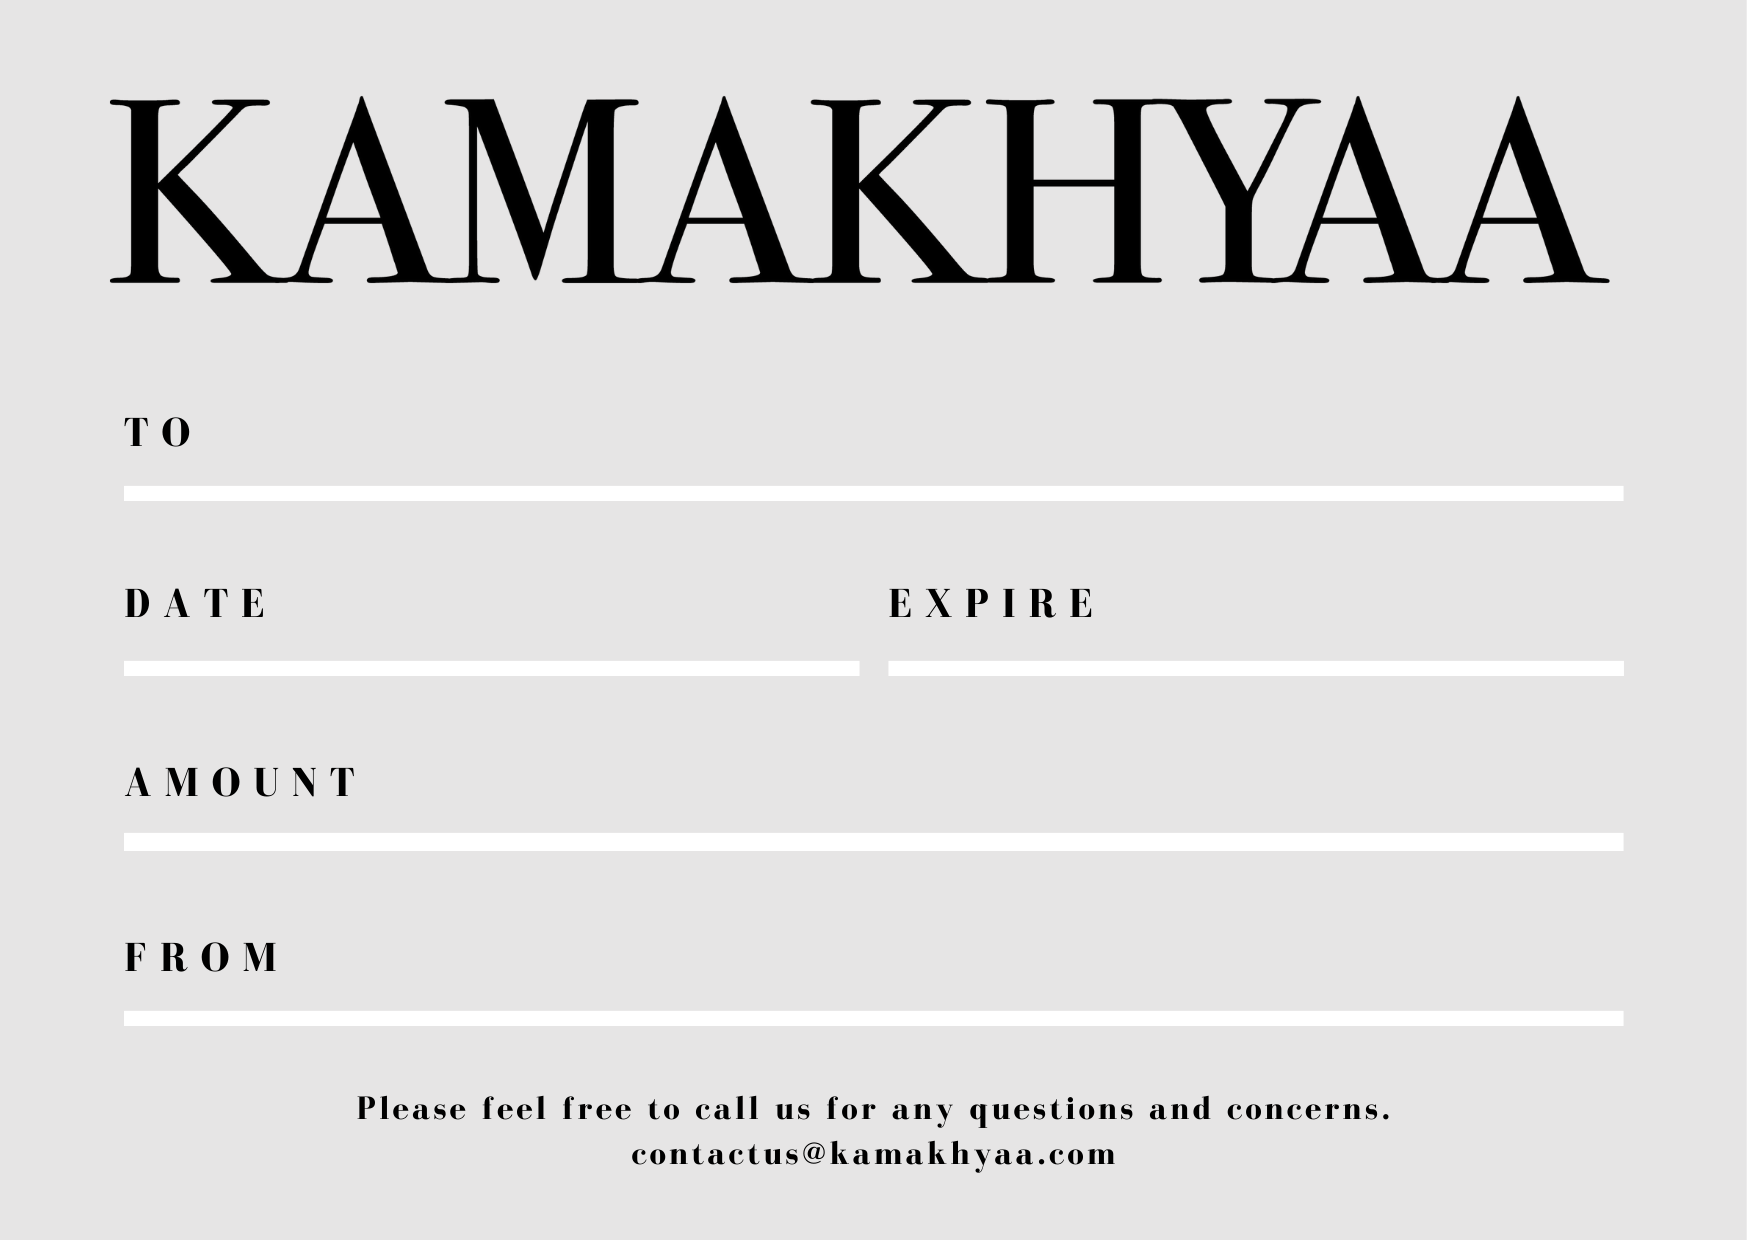 KKY Gift Card at Kamakhyaa by Kamakhyaa. This item is 